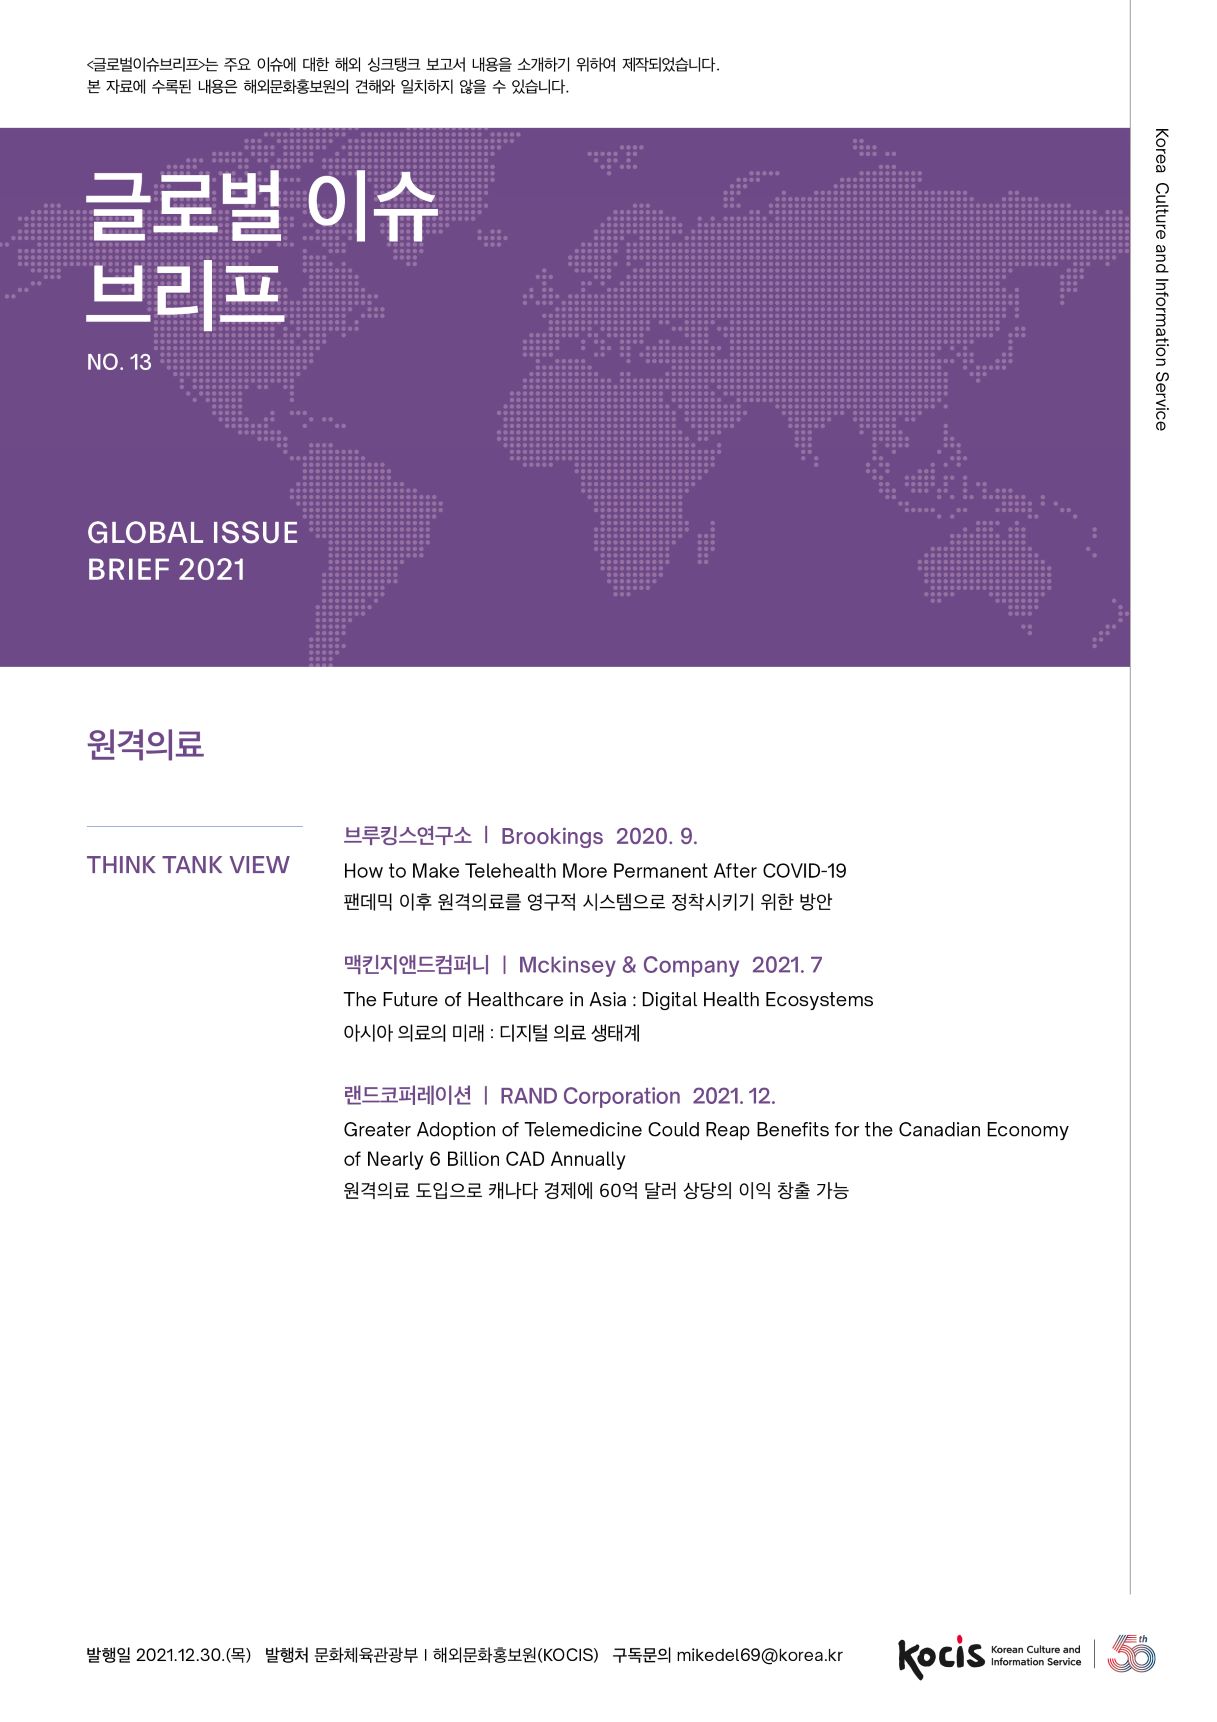 글로벌이슈브리프는 주요 이슈에 대한 해외 싱크탱크 보고서 내용을 소개하기 위하여 제작되었습니다. 본 자료에 수록된 내용은 해외문화홍보원의 견해와 일치하지 않을 수 있습니다. 글로벌 이슈 브리프 Korea Culture and Information Service NO.13 GLOBAL ISSUE BRIEF 2021 원격의료 THINK TANK VIEW 브루킹스연구소 | Brookings 2020. 9. How to Make Telehealth More Permanent After COVID-19 팬데믹 이후 원격의료를 영구적 시스템으로 정착시키기 위한 방안 맥킨지앤드컴퍼니 | Mckinsey & Company 2021. 7 The Future of Healthcare in Asia : Digital Health Ecosystems 아시아 의료의 미래 : 디지털 의료 생태계 랜드코퍼레이션 | RAND Corporation 2021. 12. Greater Adoption of Telemedicine Could Reap Benefits for the Canadian Economy of Nearly 6 Billion CAD Annually 원격의료 도입으로 캐나다 경제에 60억 달러 상당의 이익 창출 가능 발행일 2021.12.30.(목) 발행처 문화체육관광부 | 해외문화홍보원(KOCIS) 구독문의 mikedel69@korea.kr Korean Culture and Information Service